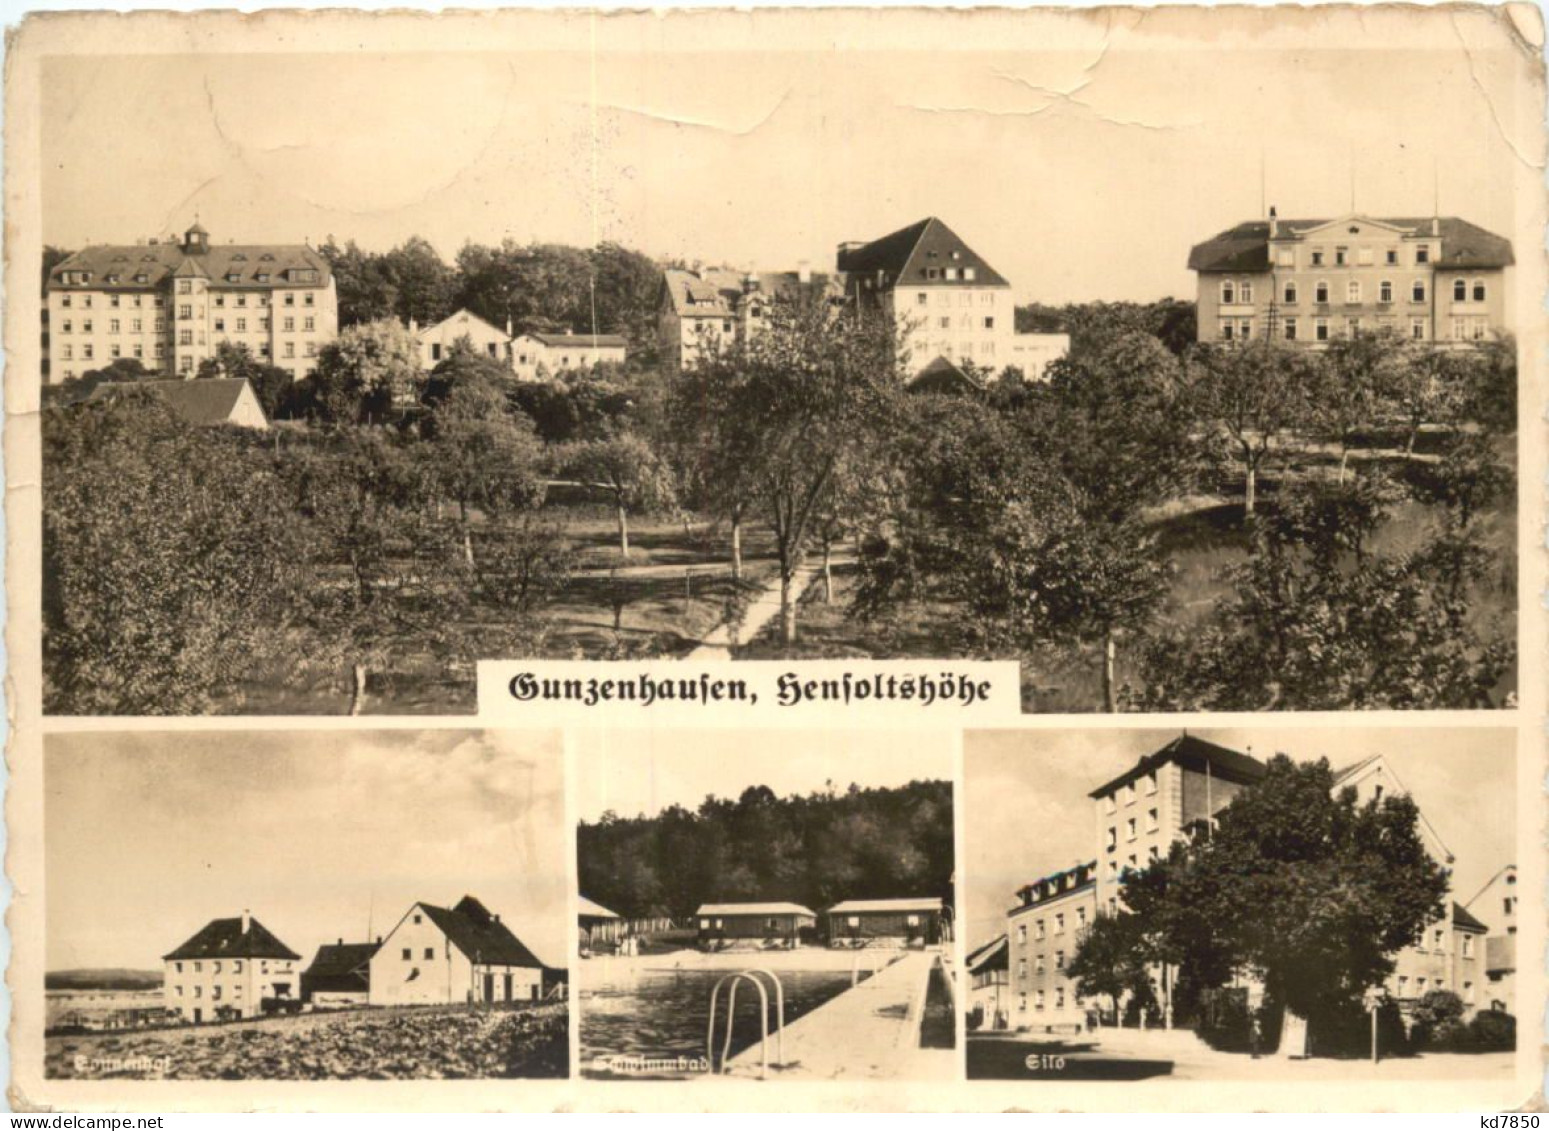 Gunzenhausen-Hensoltshöhe - Weissenburg